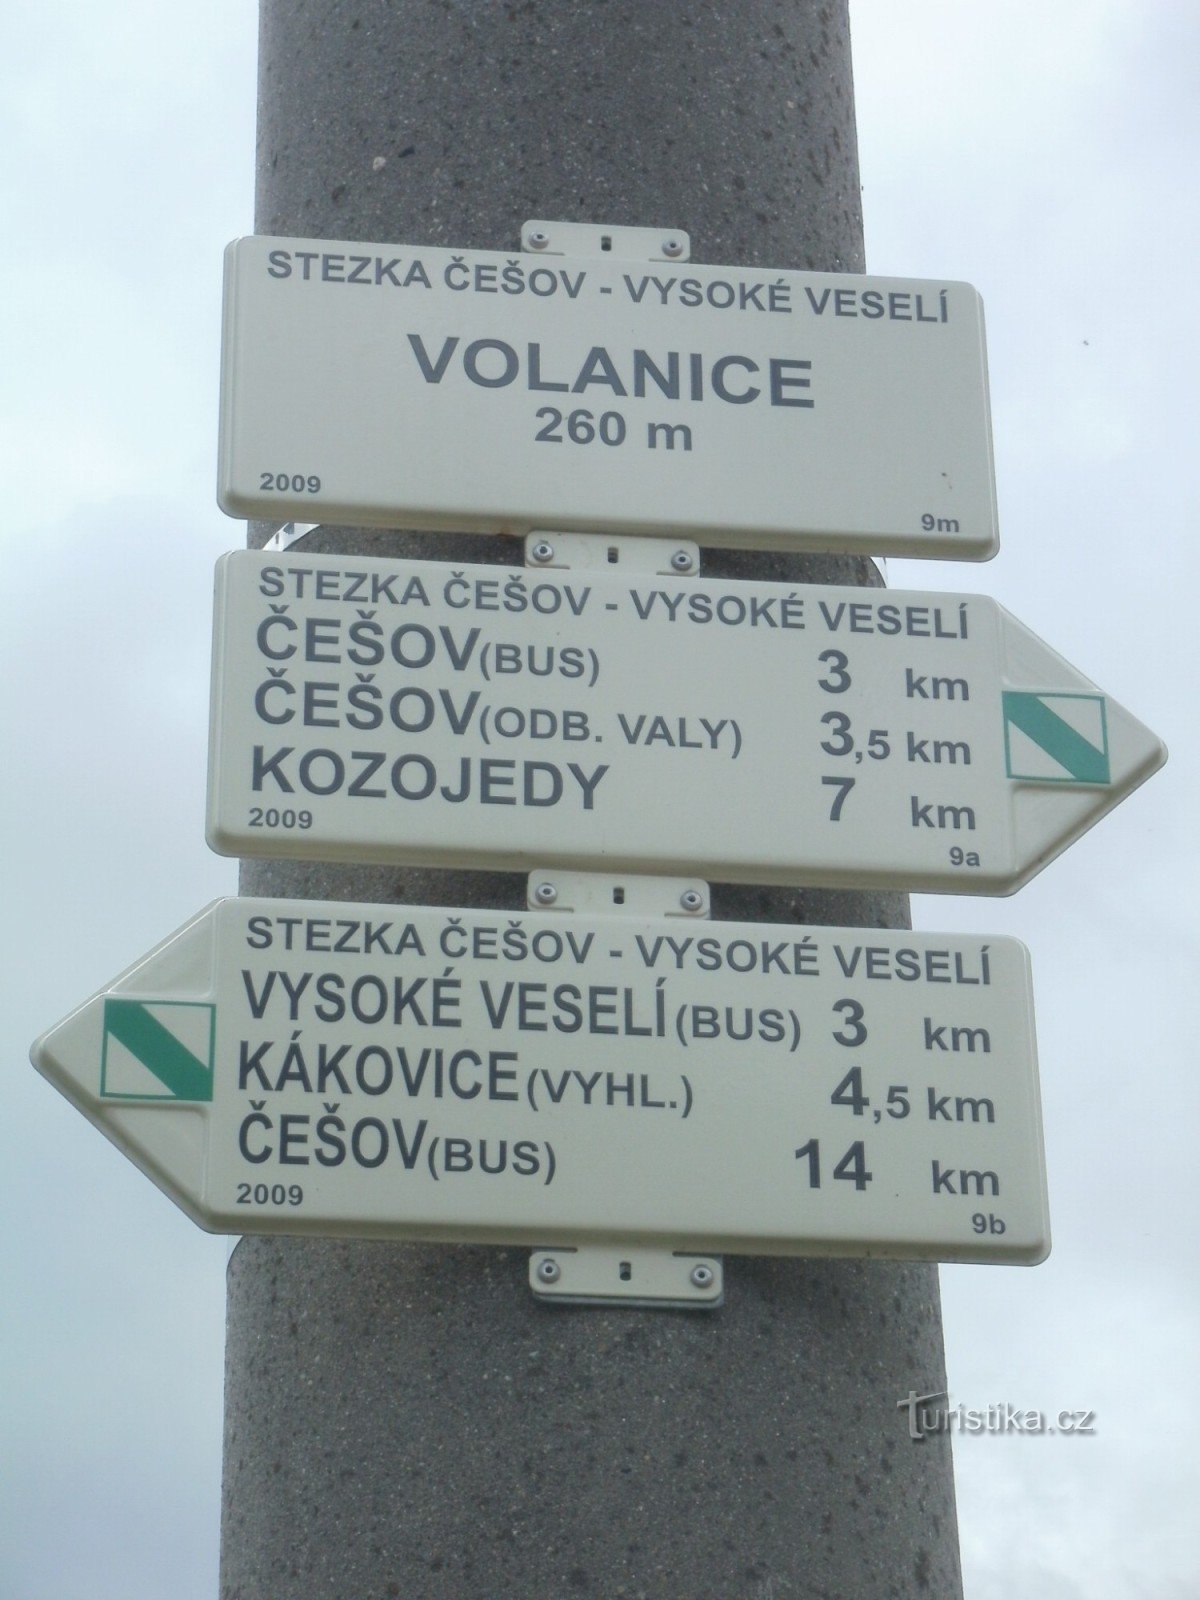 križišče NS Češov-Vysoké Veselí - Volanice